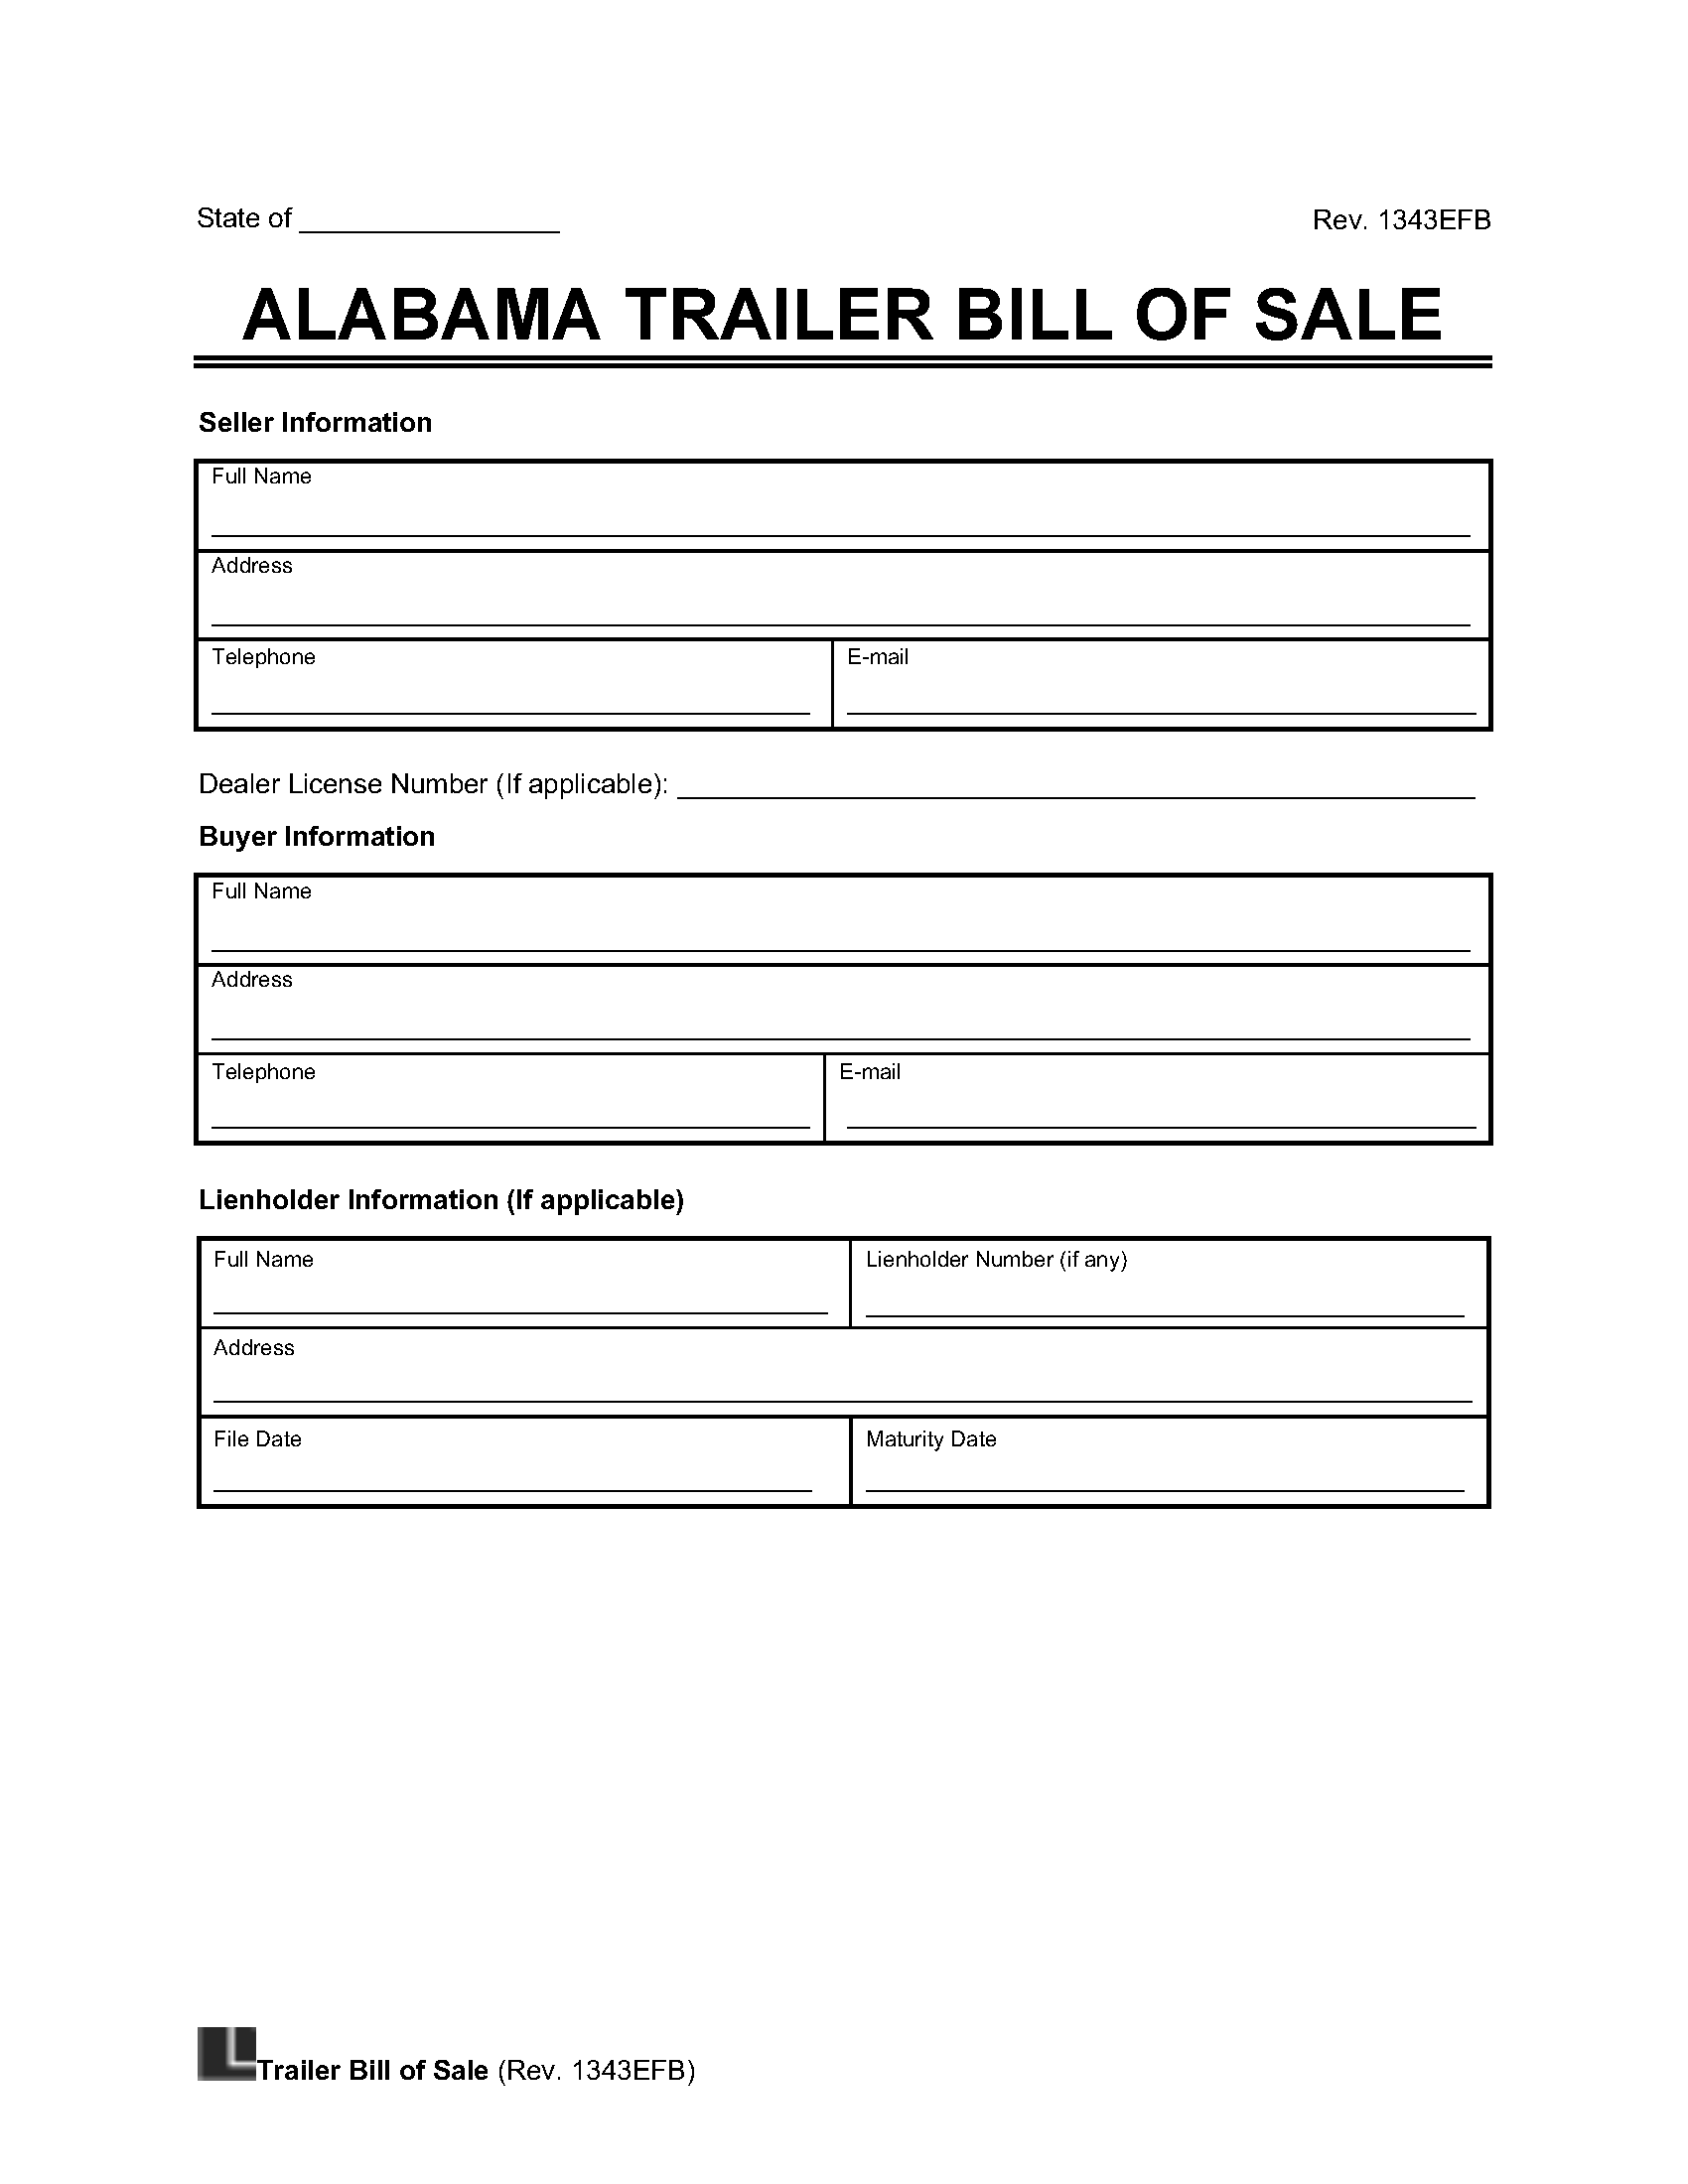 Alabama Trailer Bill of Sale screenshot